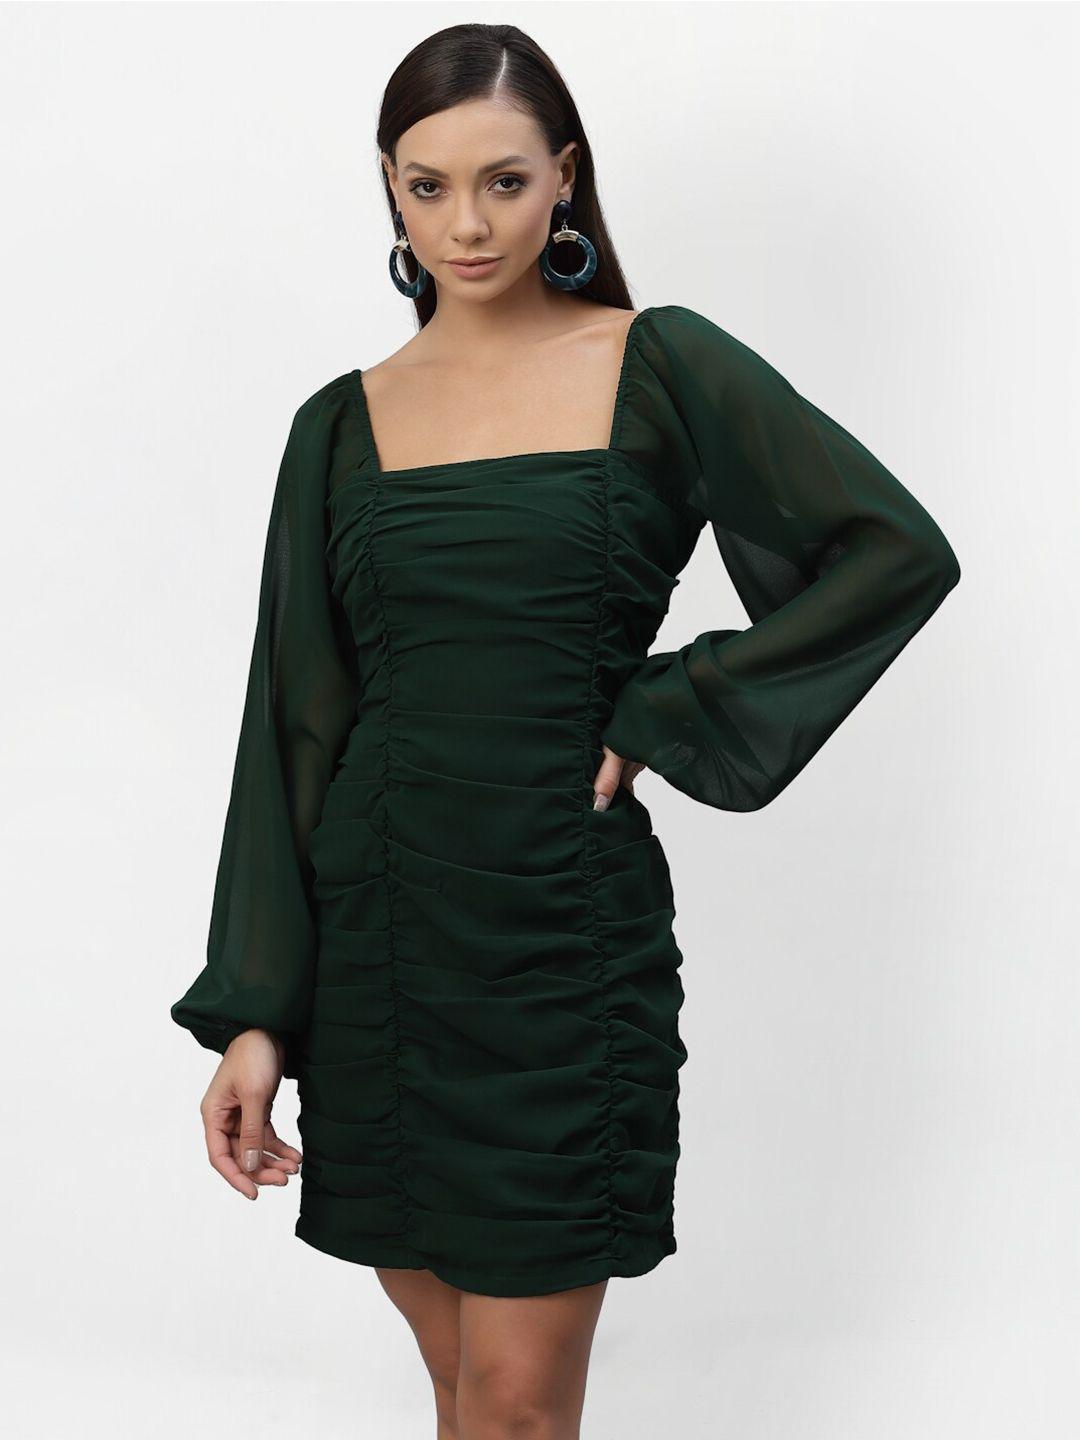 aayu women green georgette sheath dress